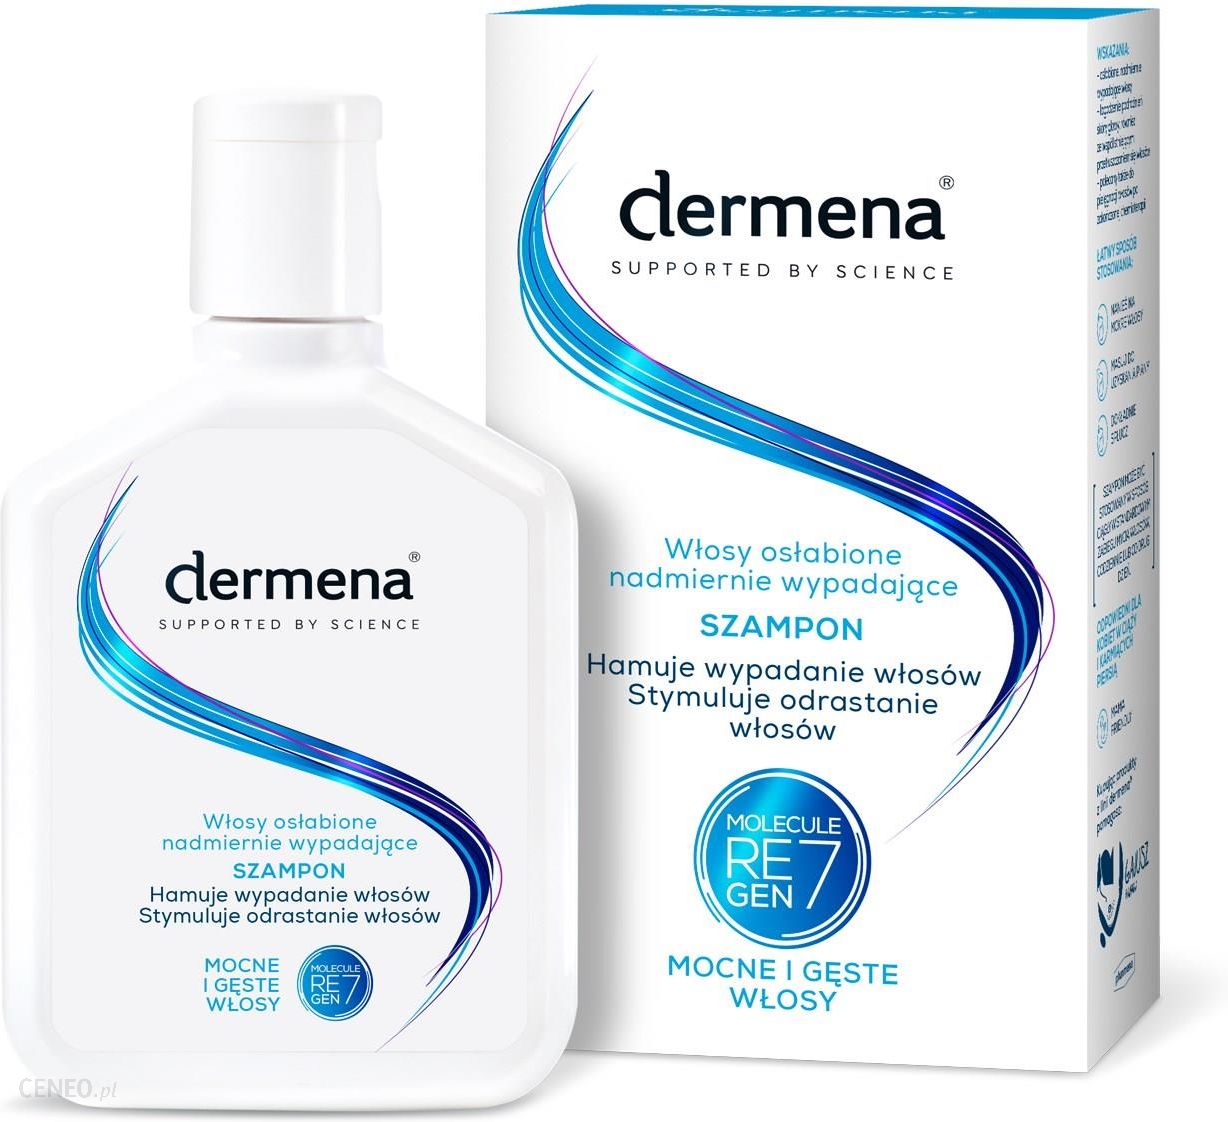 dermena szampon i odżywka do włosów